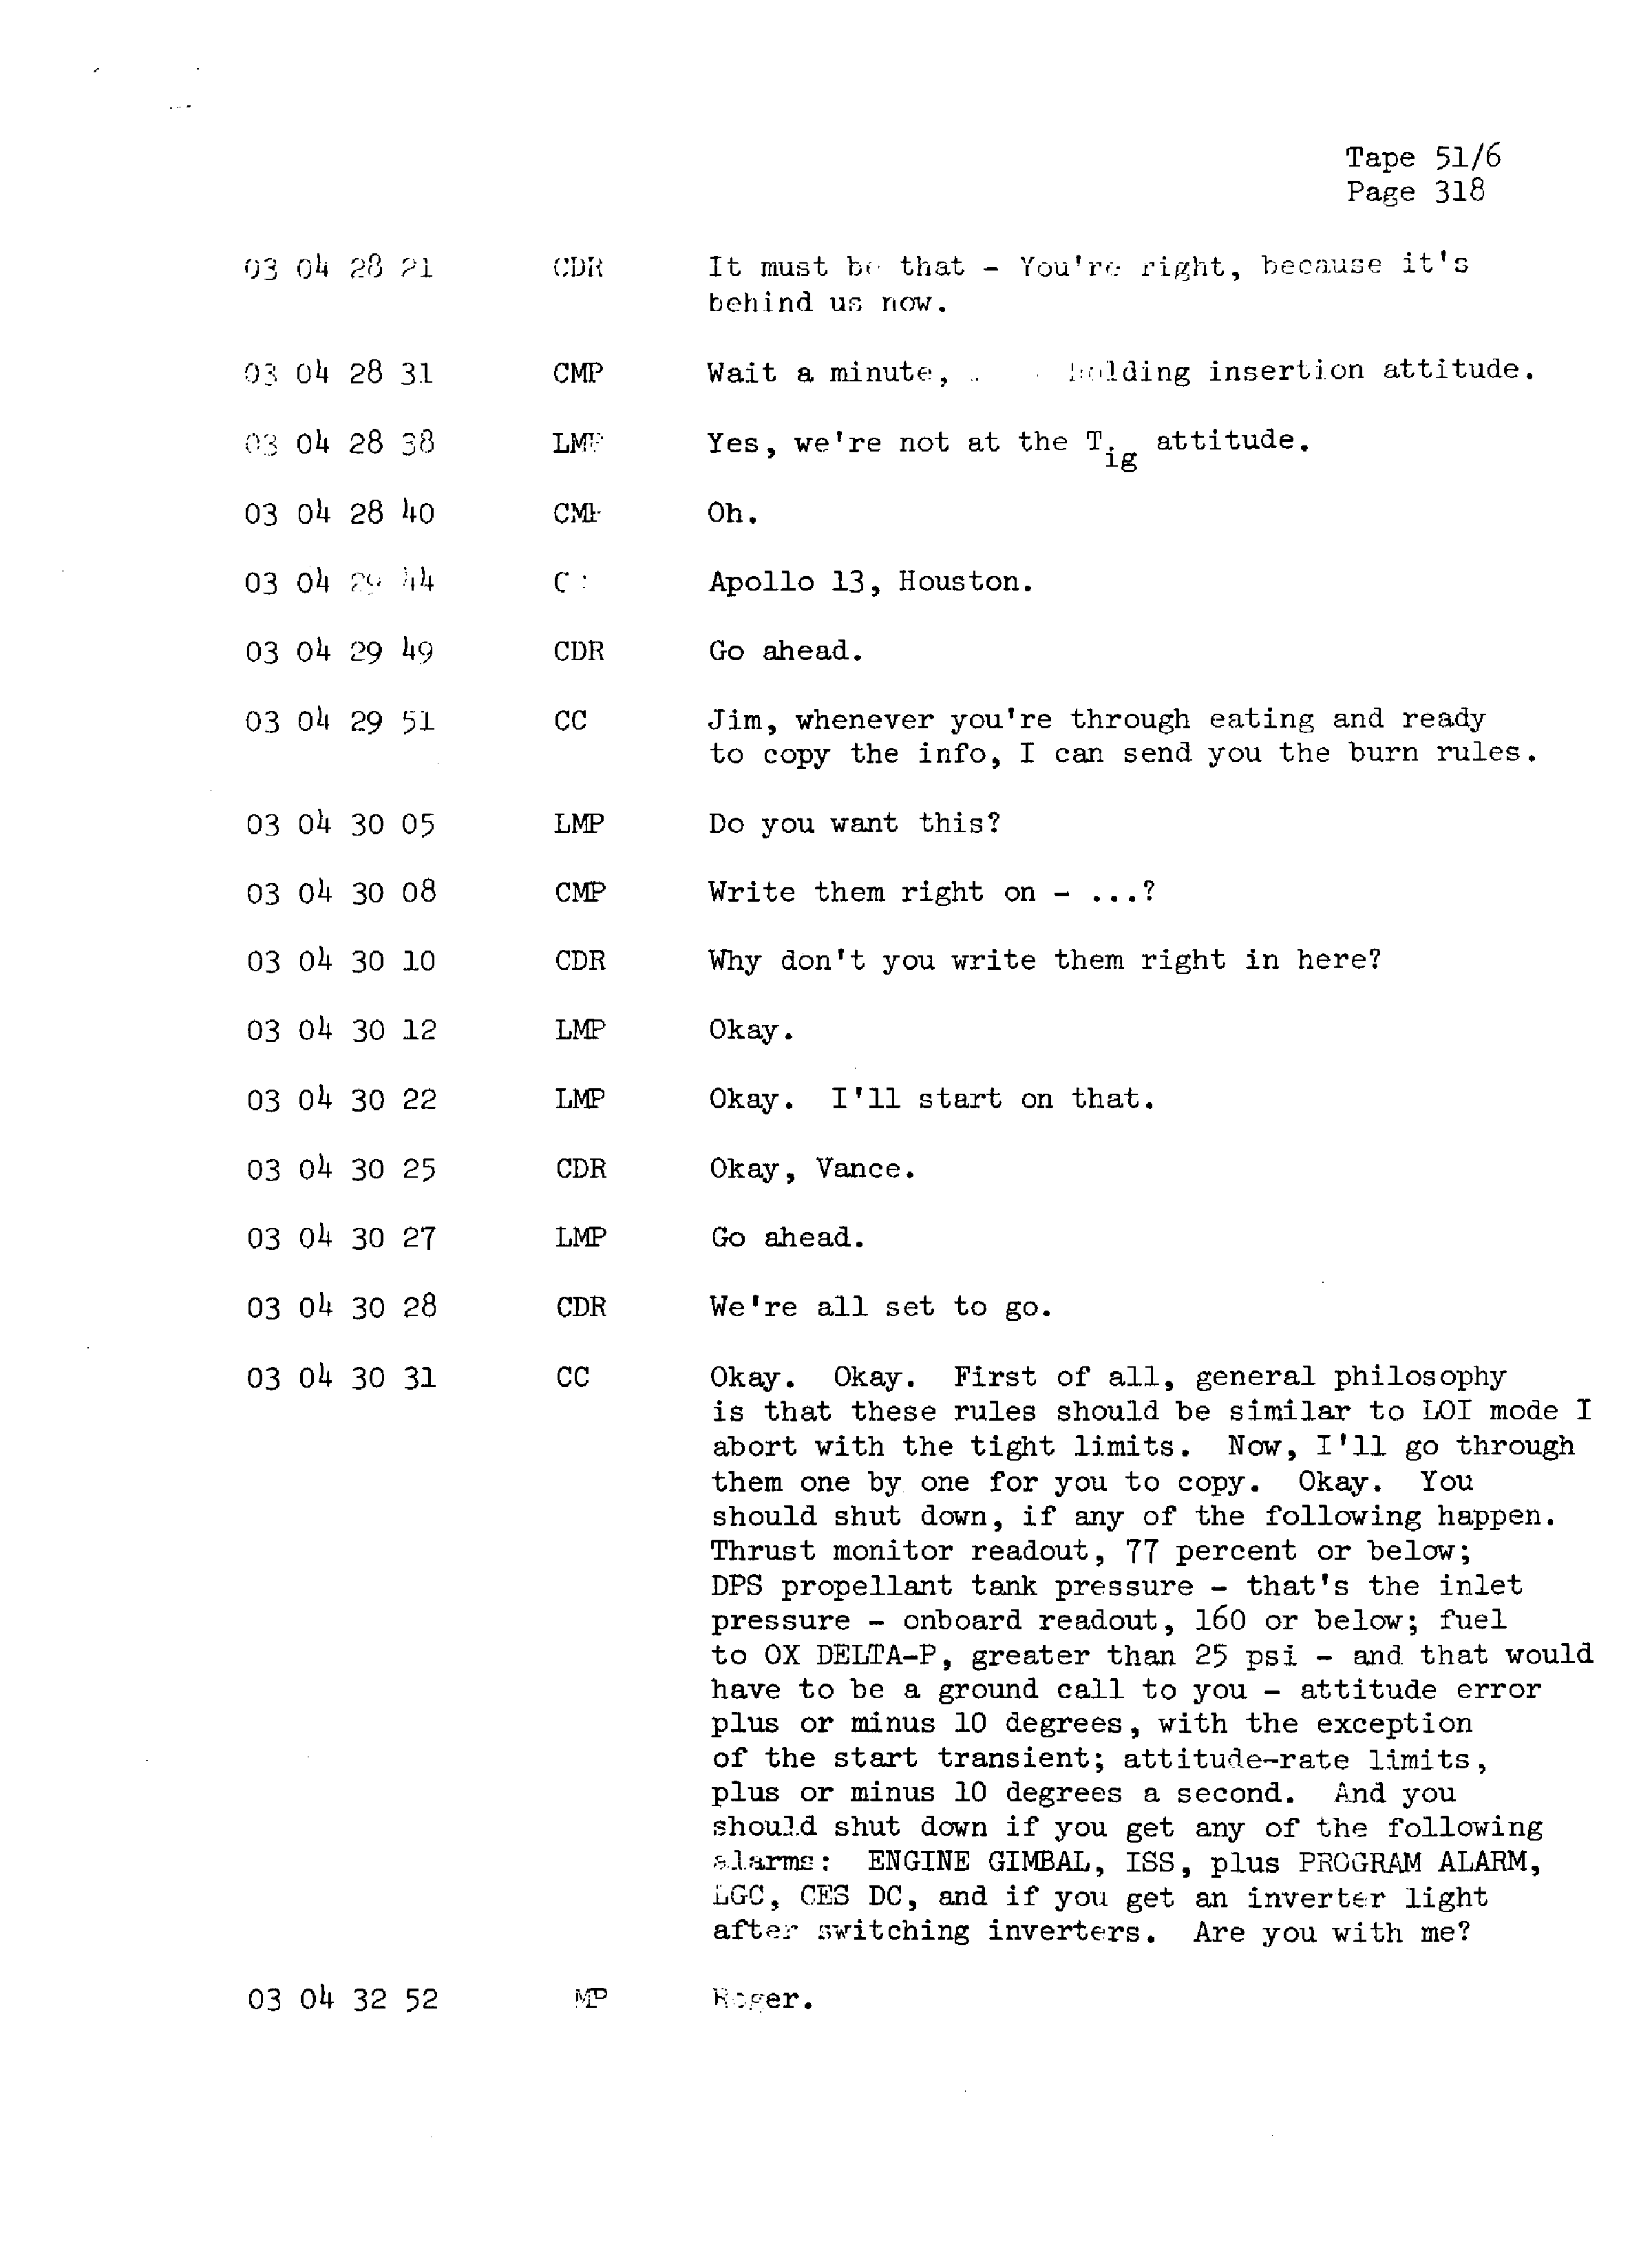 Page 325 of Apollo 13’s original transcript